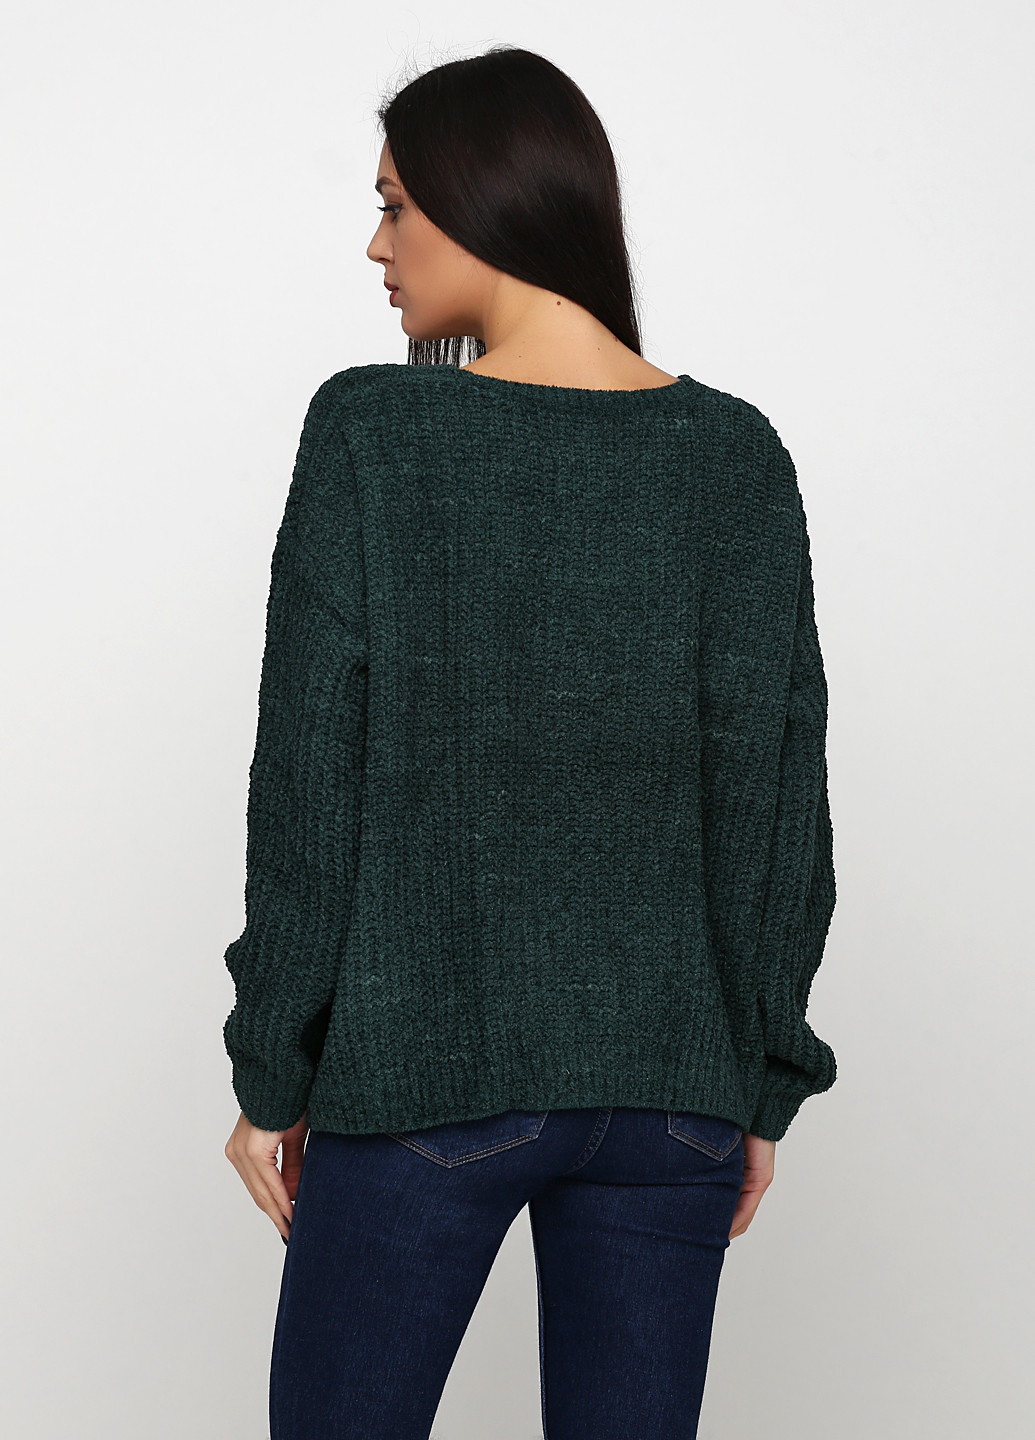 Изумрудный демисезонный пуловер пуловер CHD